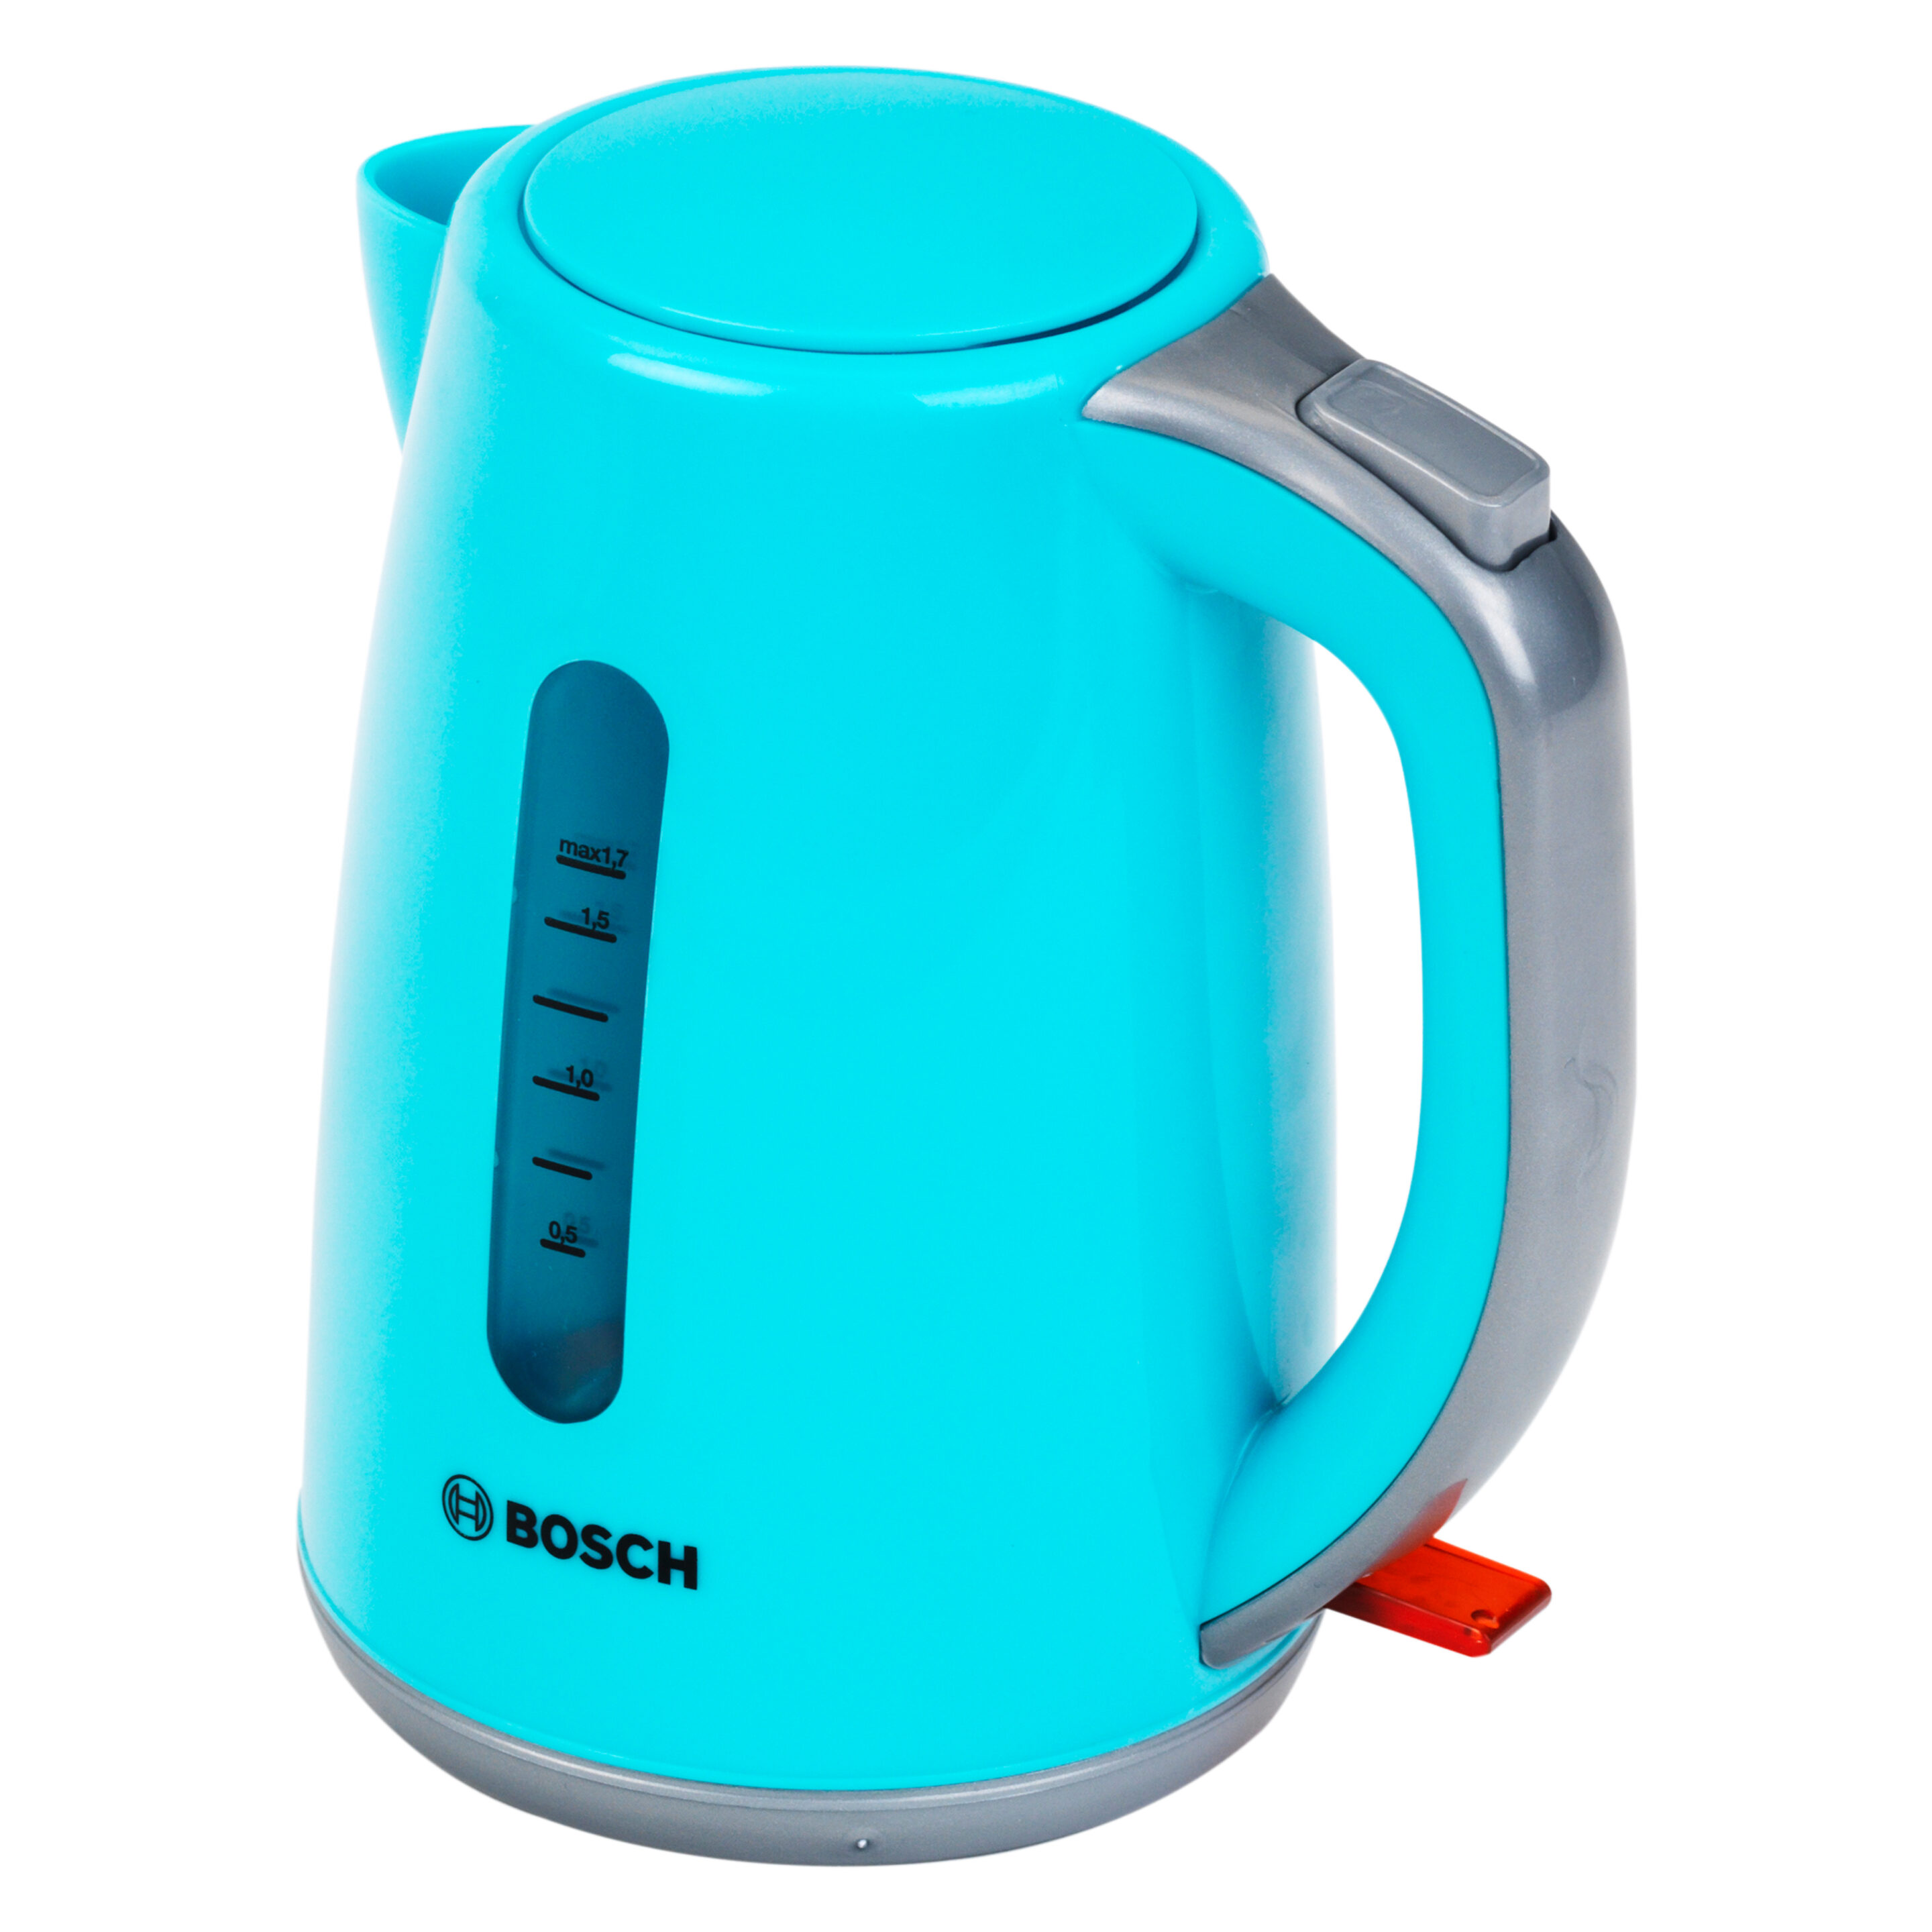 Bosch - Wasserkocher  "Happy"